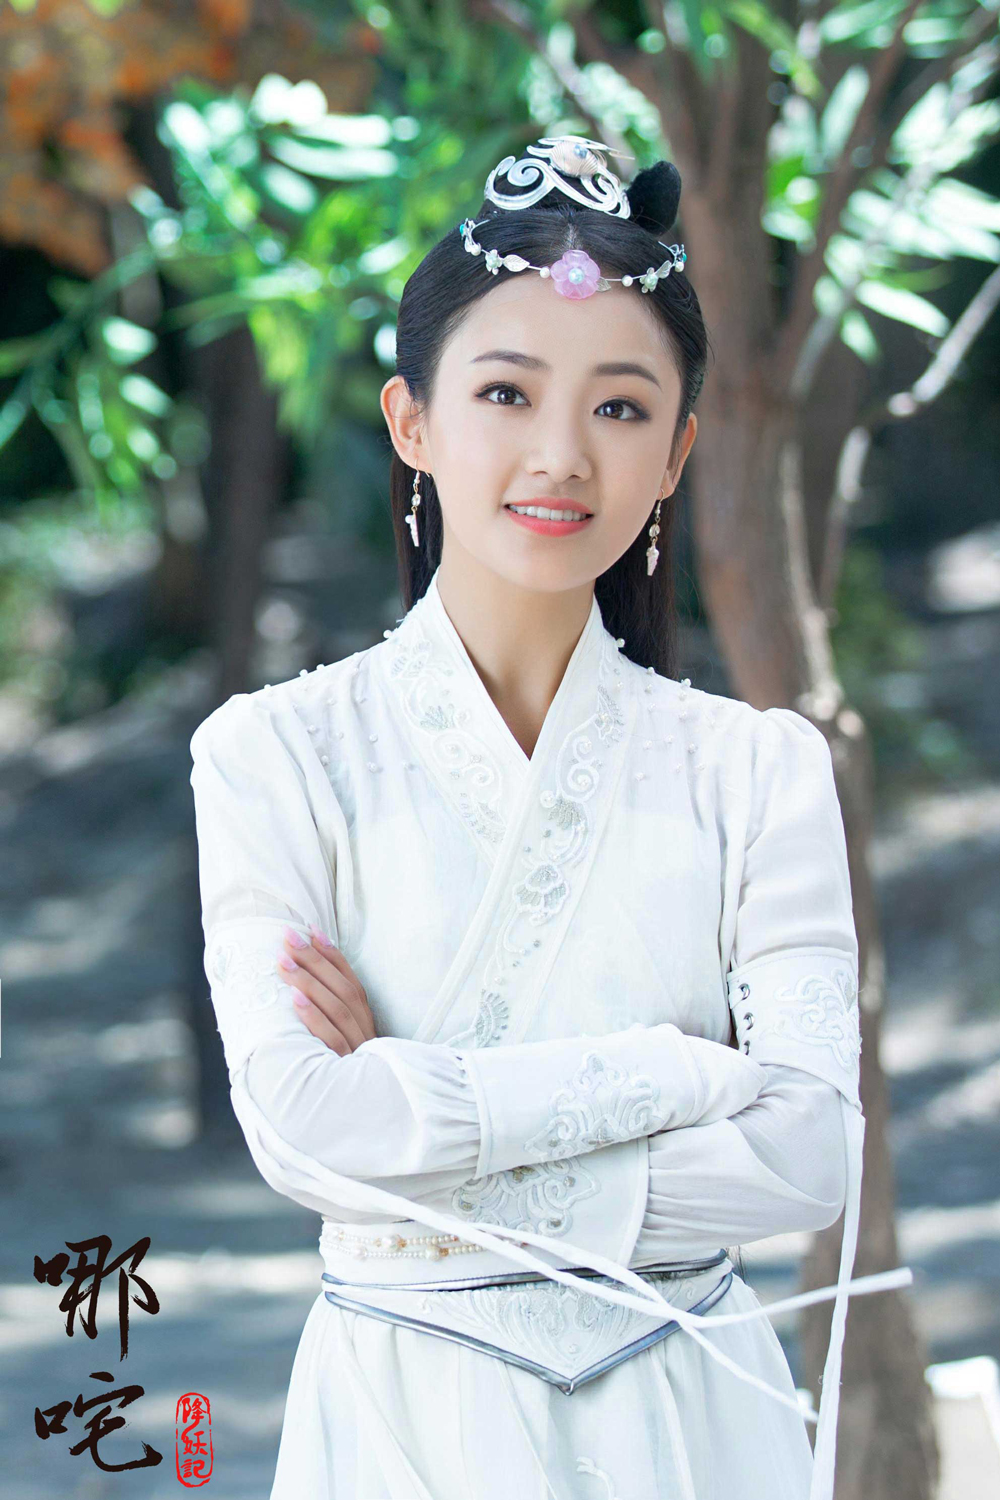 中饰演东海公主小龙女,从之前曝光的几版剧照中可以看出,吴佳怡姣好的